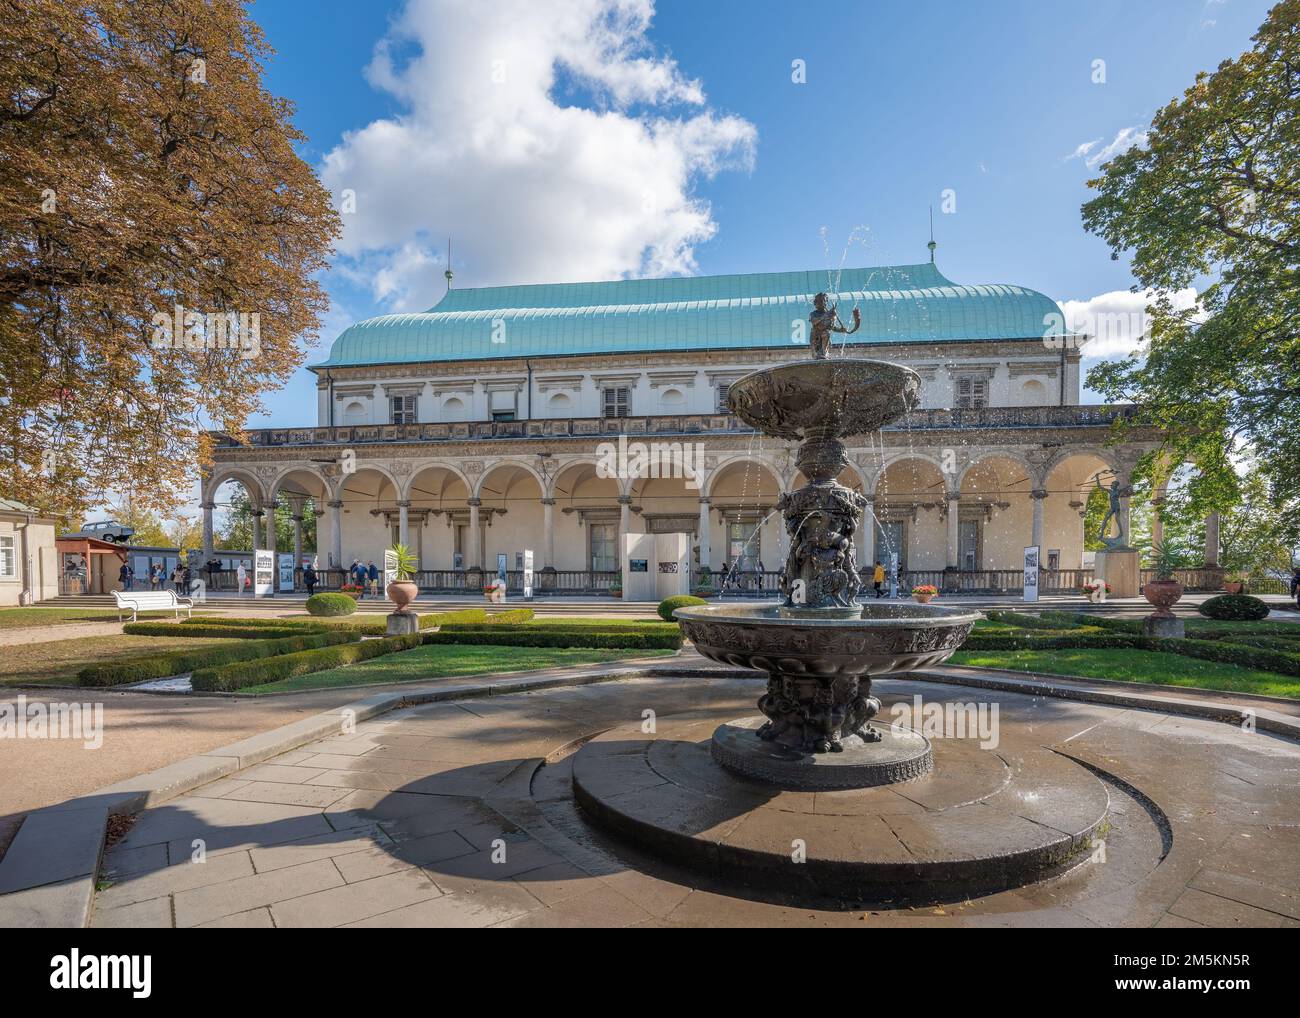 Singender Brunnen und Sommerpalast Queen Annes im königlichen Garten der Prager Burg - Prag, Tschechische Republik Stockfoto